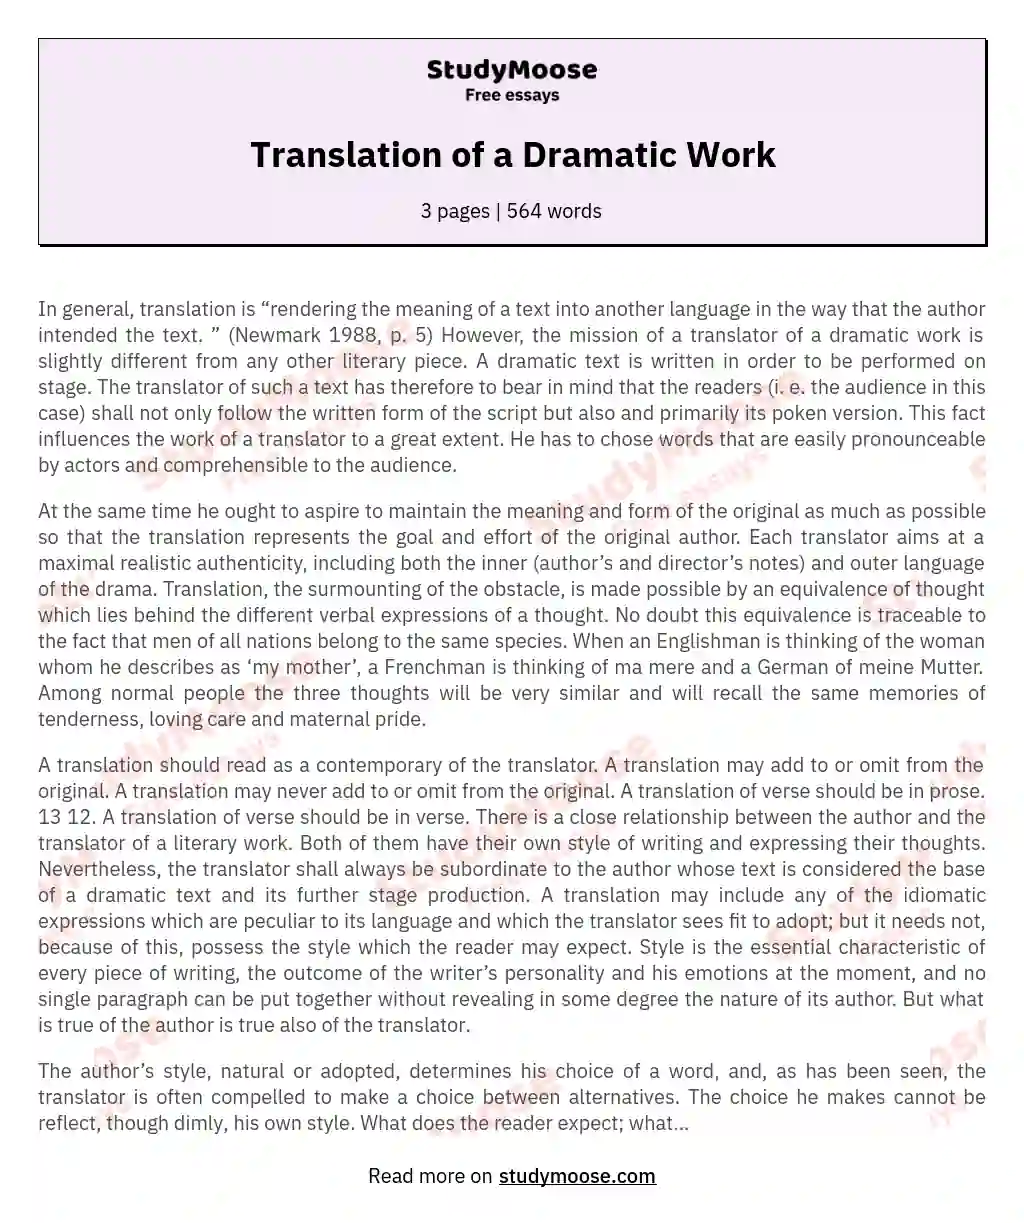 Translation of a Dramatic Work essay